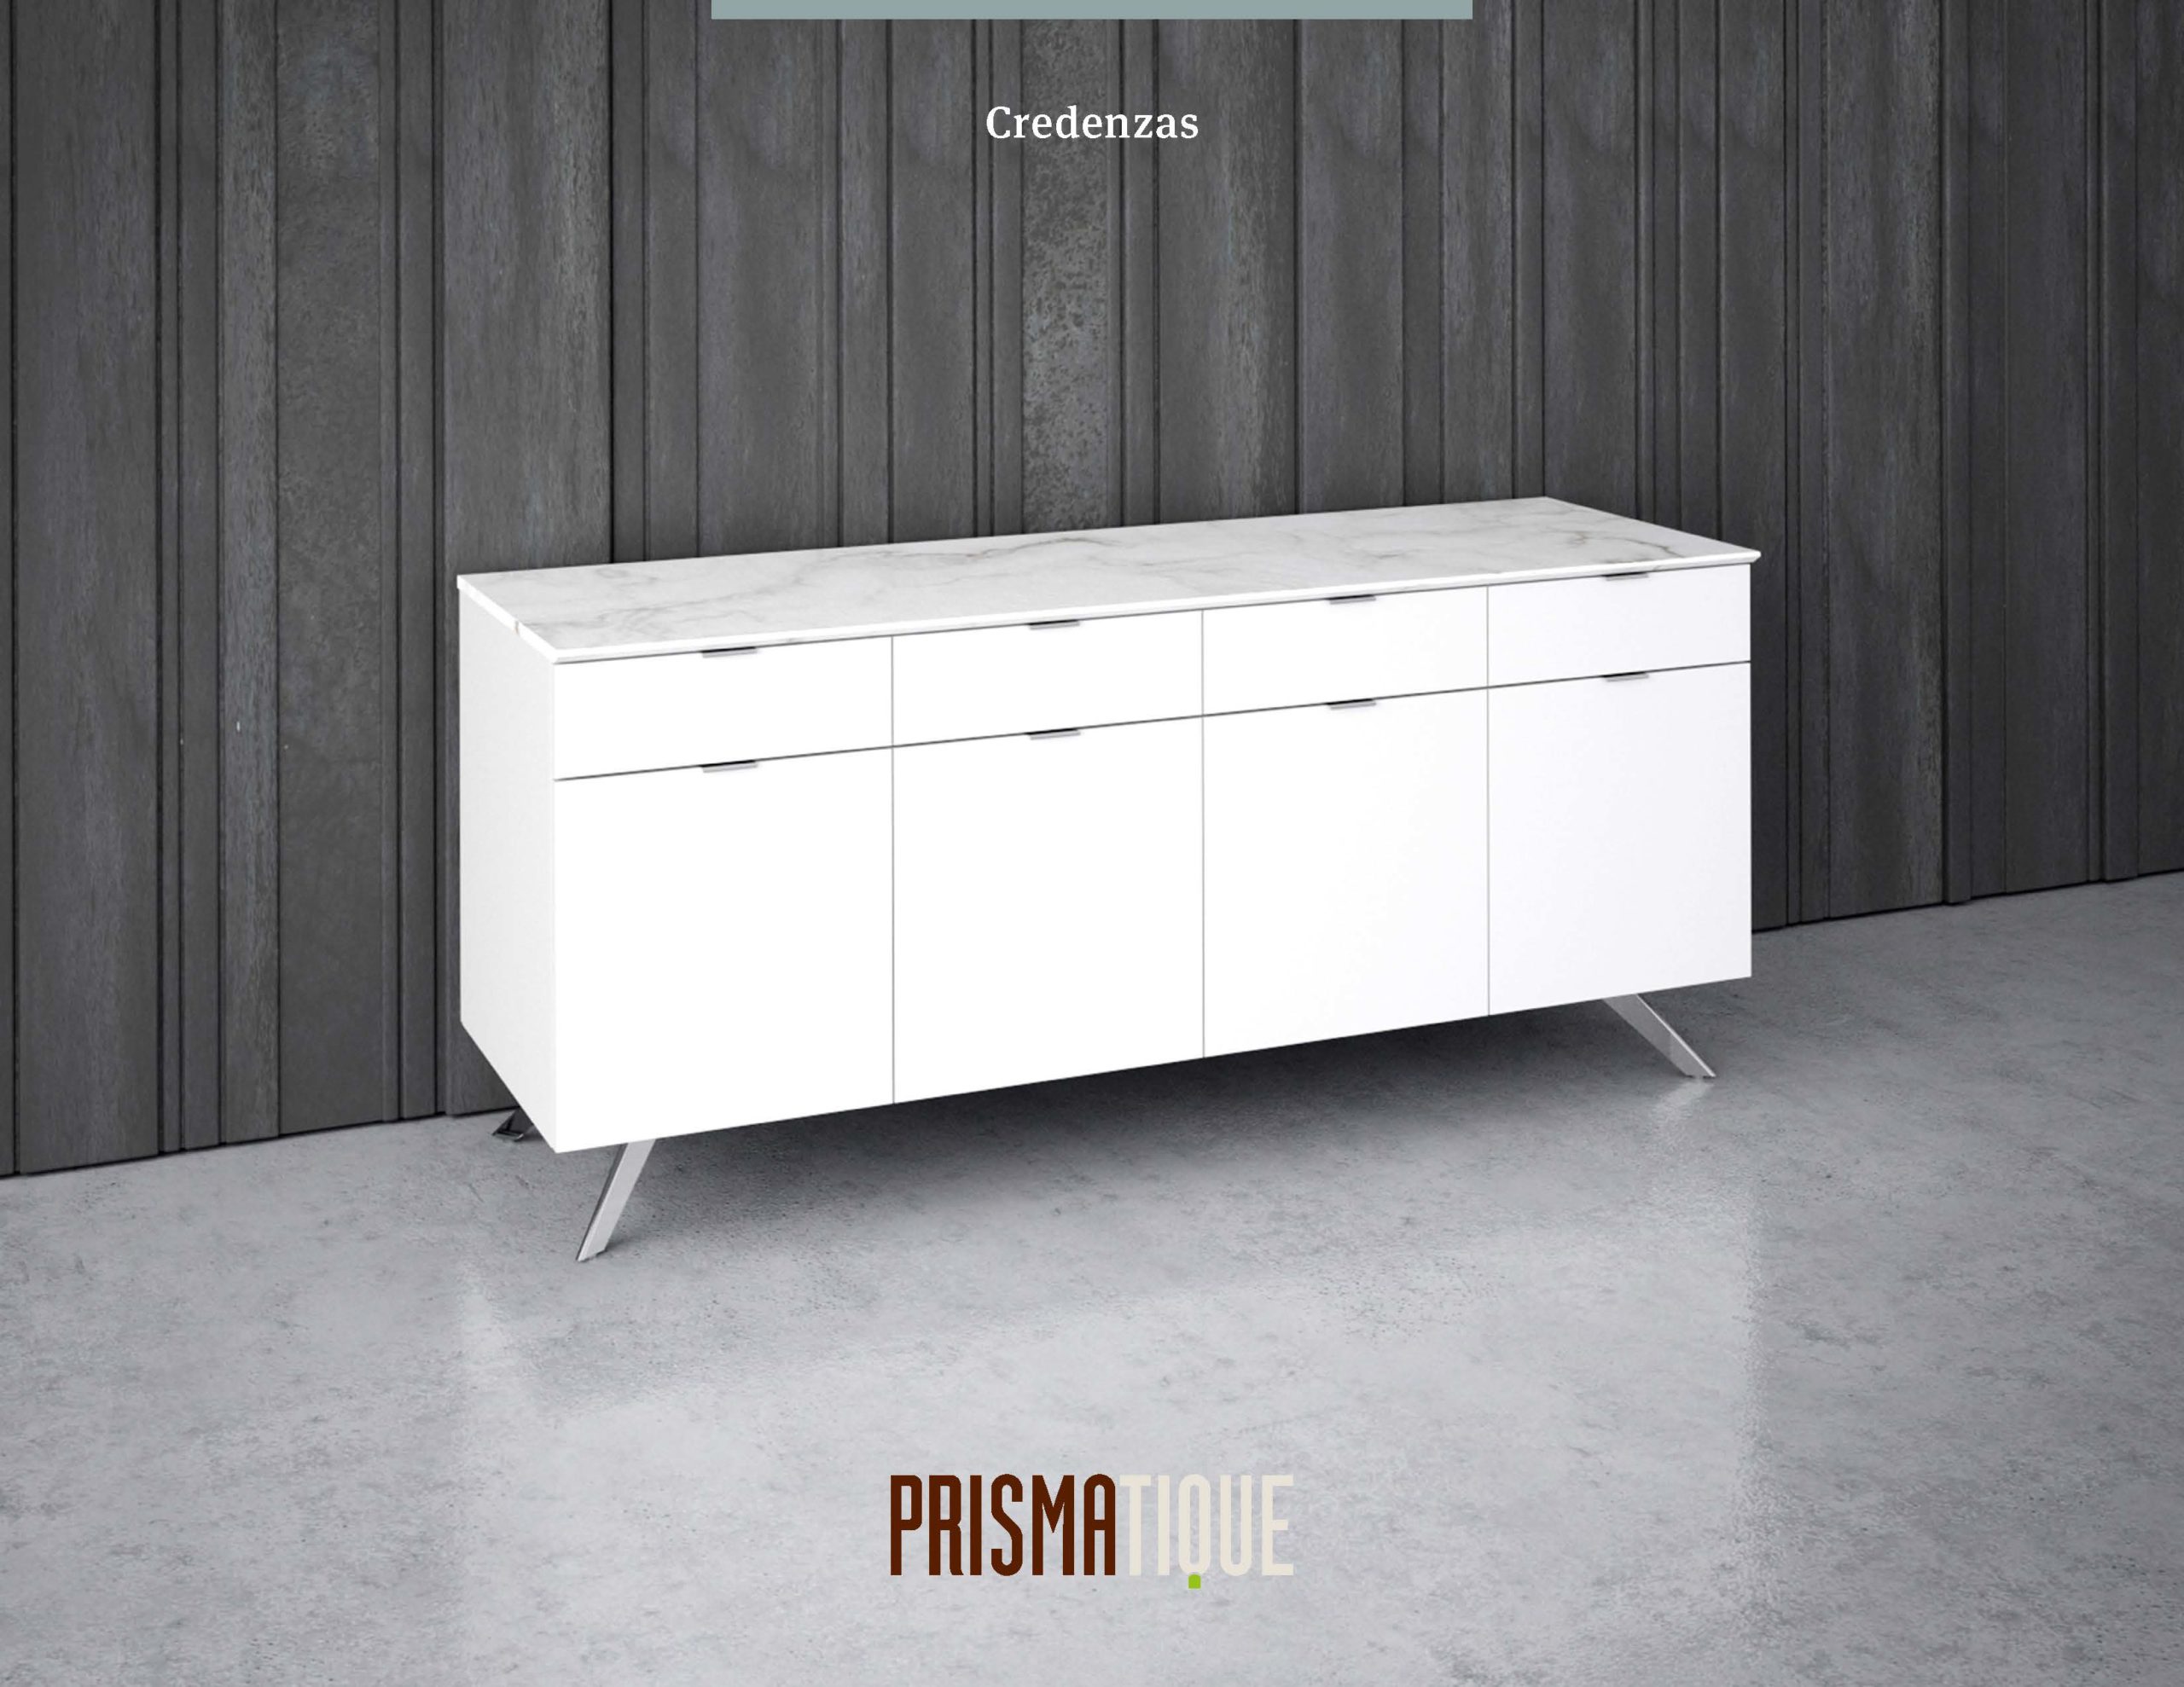 Prismatique Catalog_Credenzas Brochure Cover